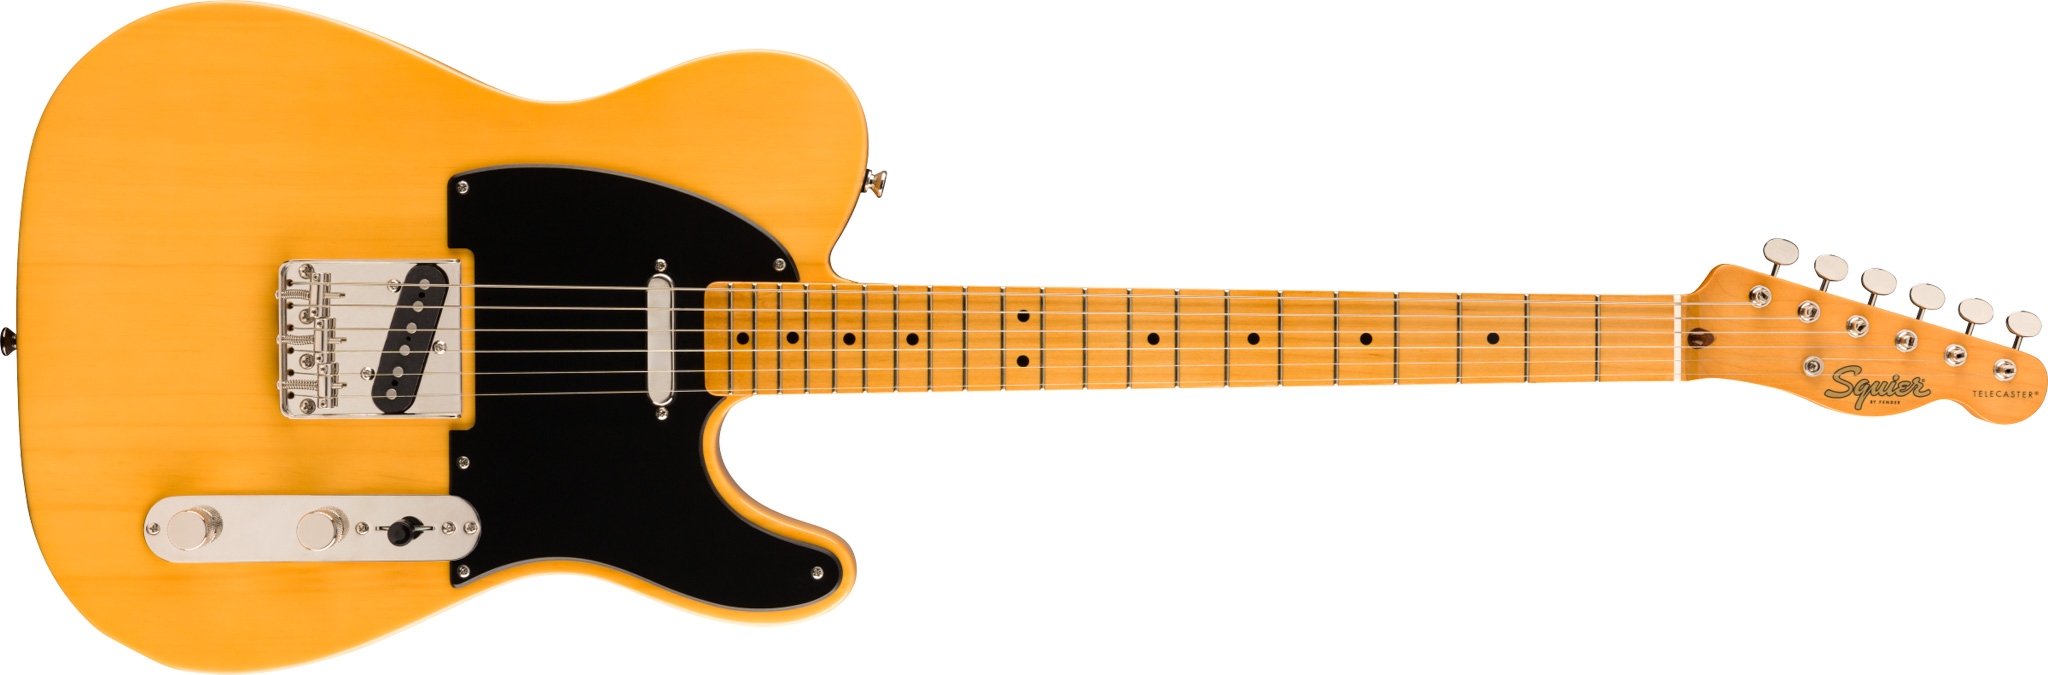 Billede af Fender Squier Classic Vibe '50s Telecaster El-guitar (Butterscotch Blonde)